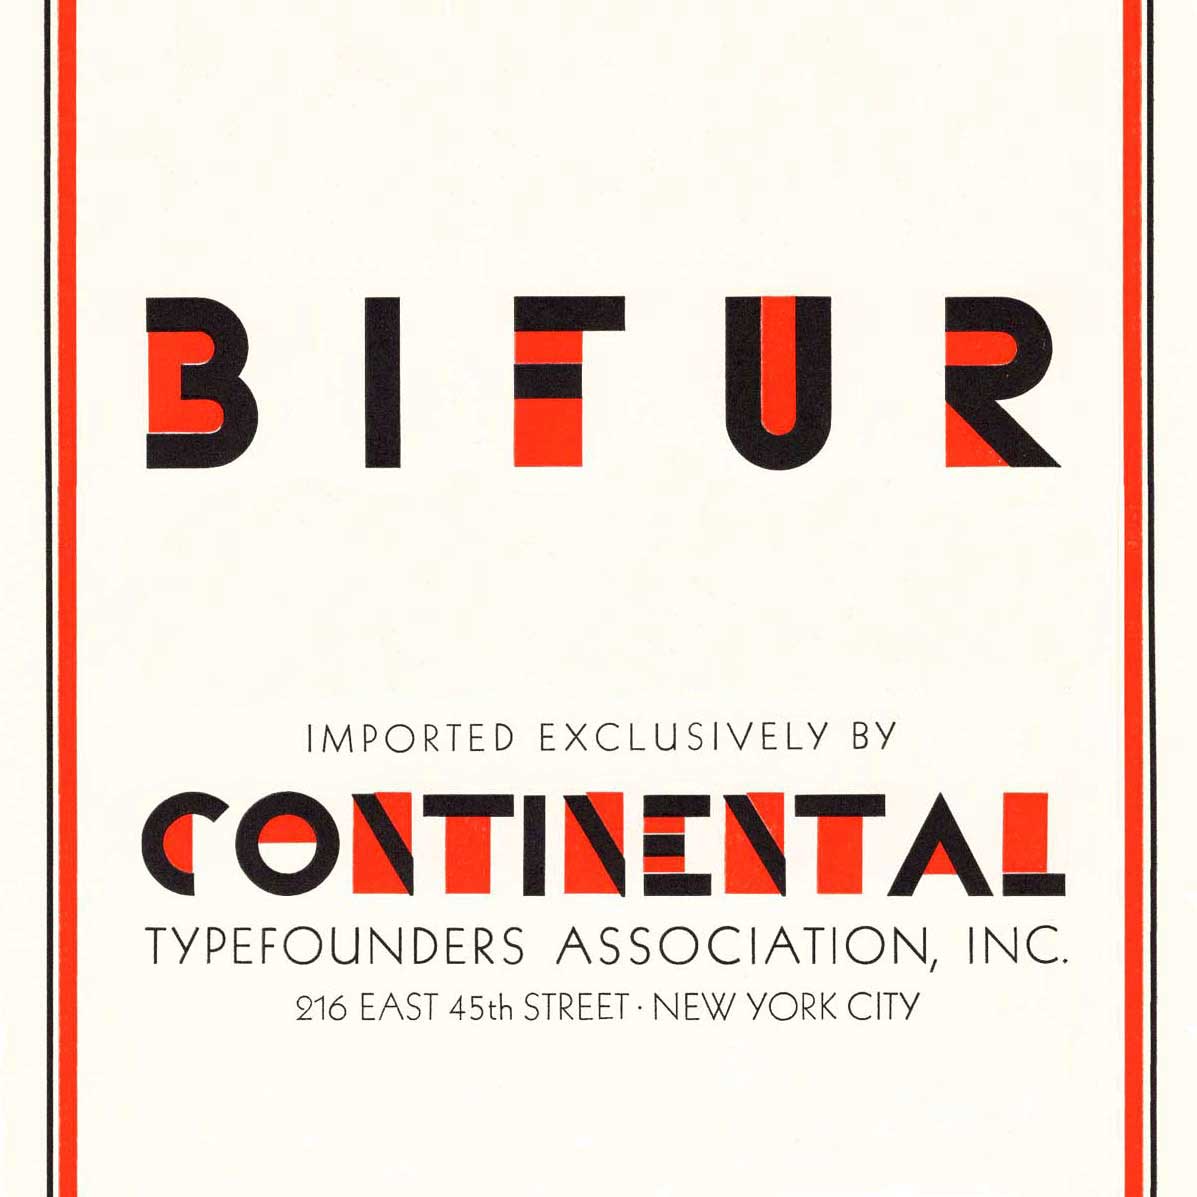 Bifur a duochrome (two color) art deco typeface.